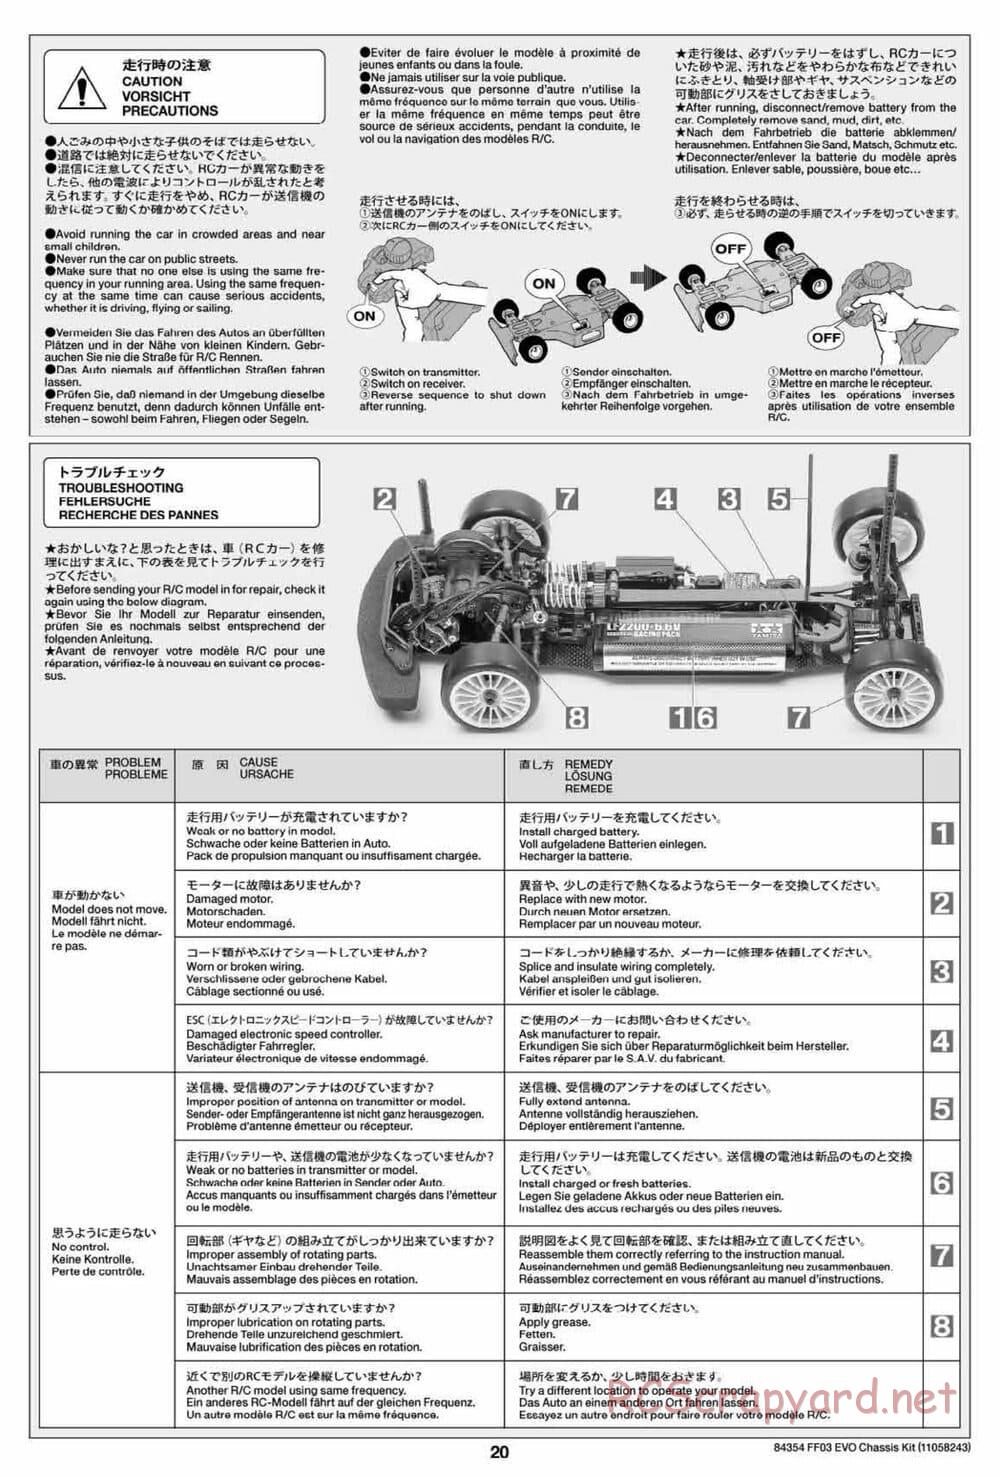 Tamiya - FF-03 Evo Chassis - Manual - Page 20